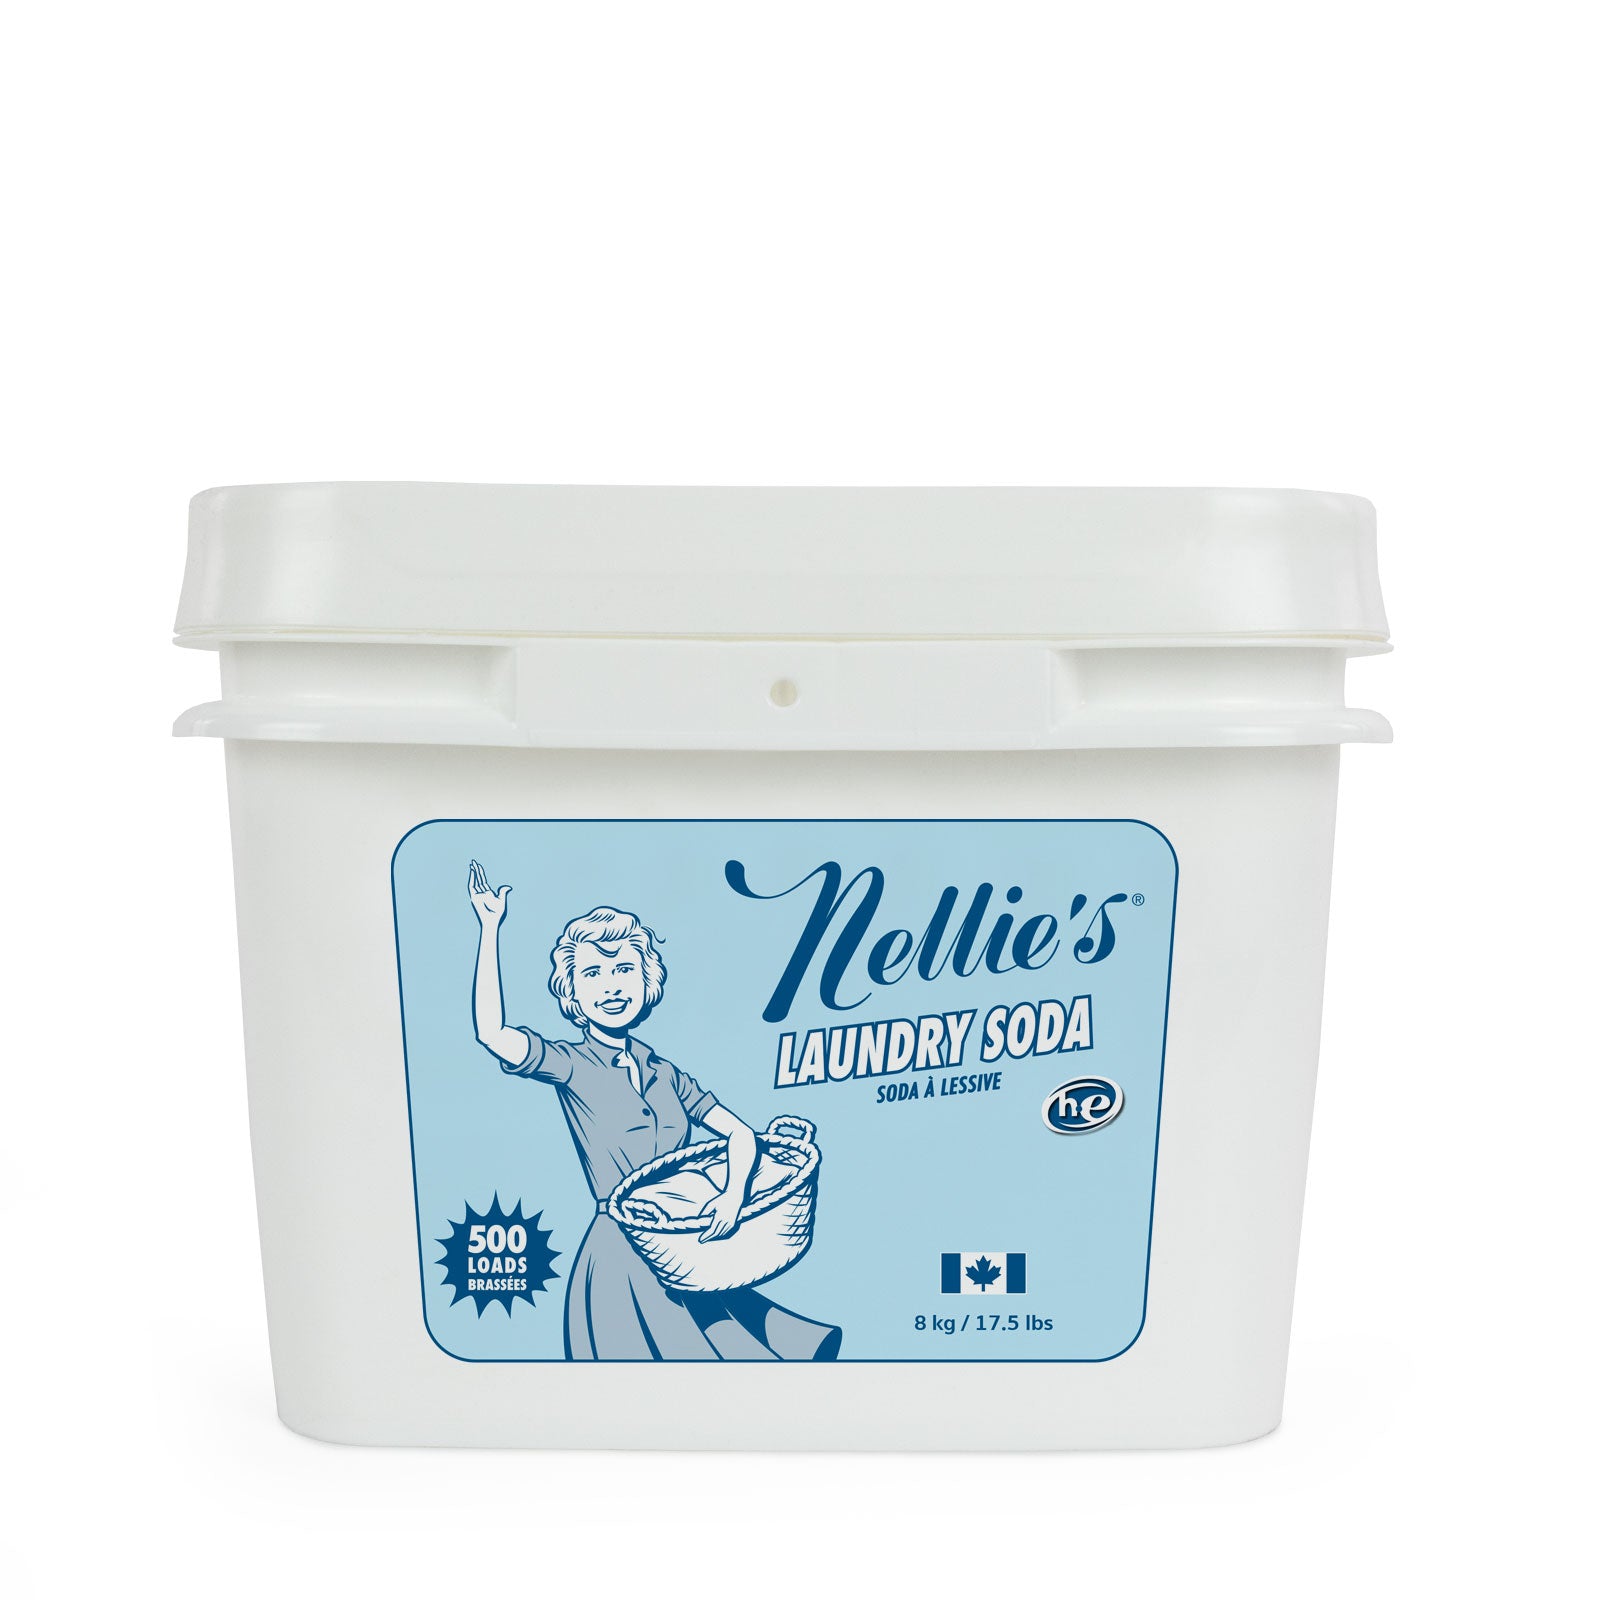 Nellie's Laundry Soda Bucket - 500 Loads - 8kg/17.5 lbs